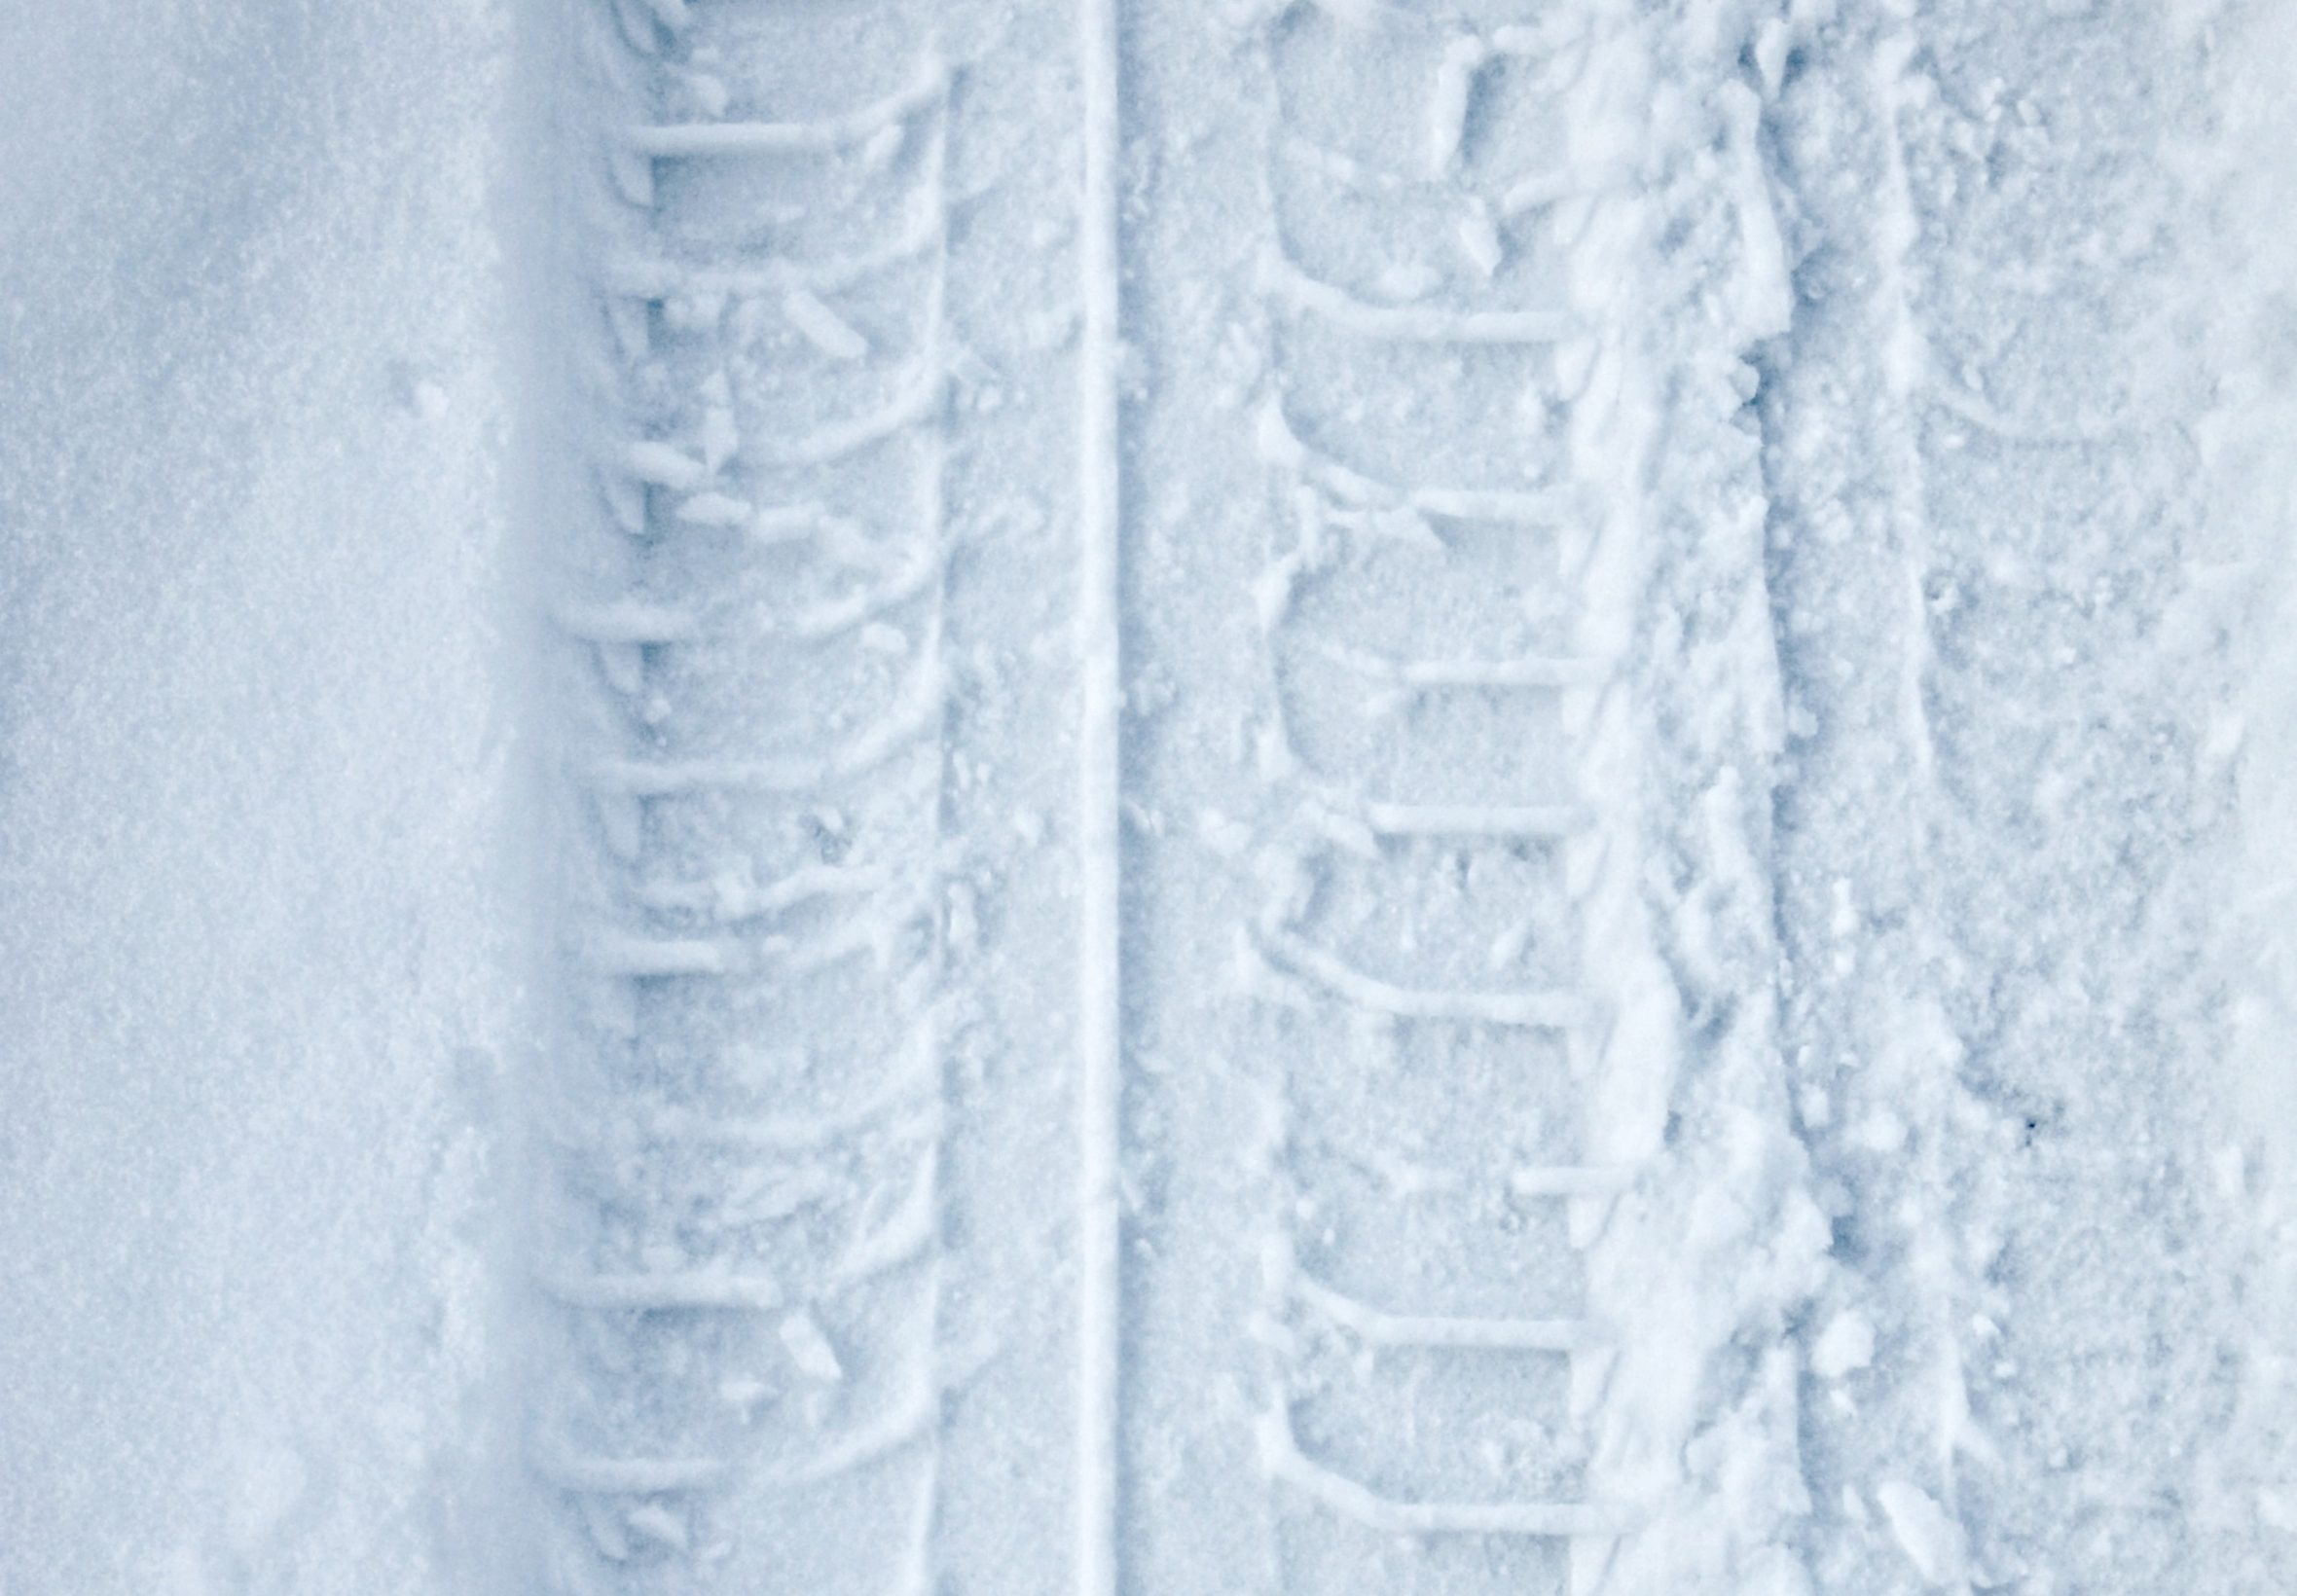 2360x1640 iPad Air wallpaper 4k Tyre Track Snow Winter iPad Wallpaper 2360x1640 pixels resolution